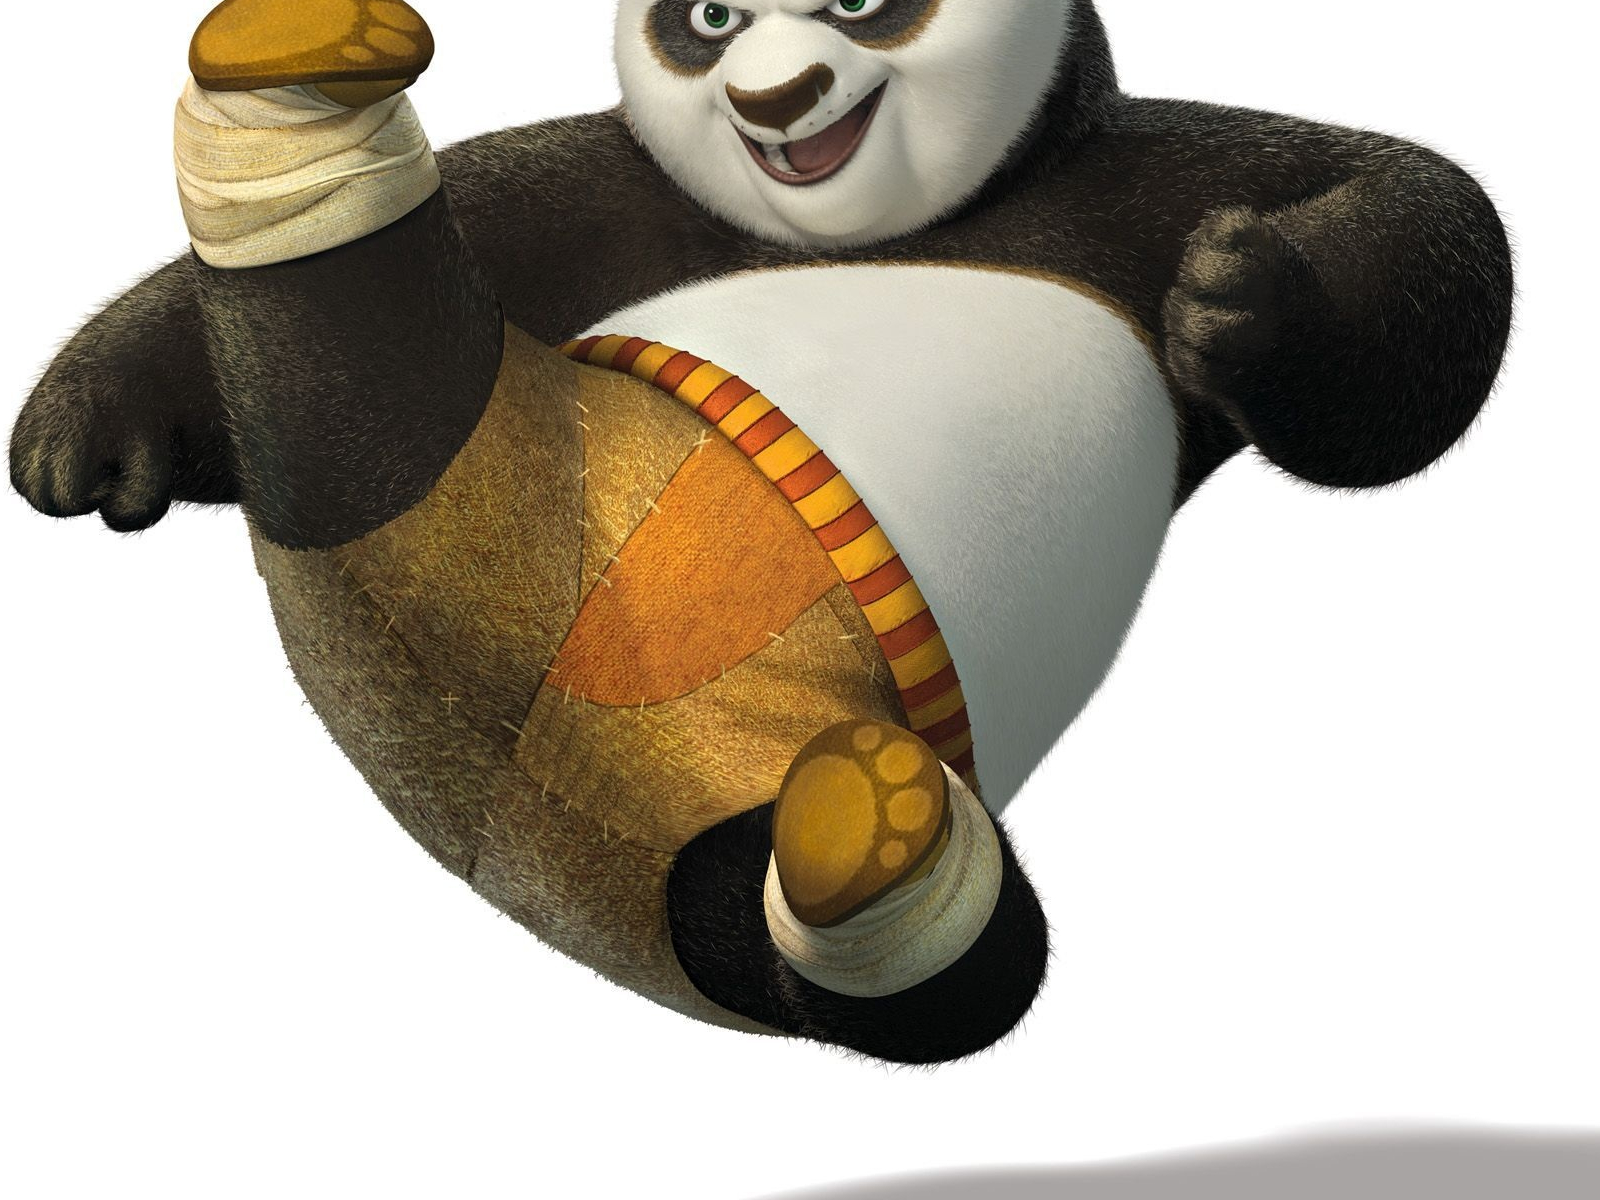 Кунг фу панда на китайском